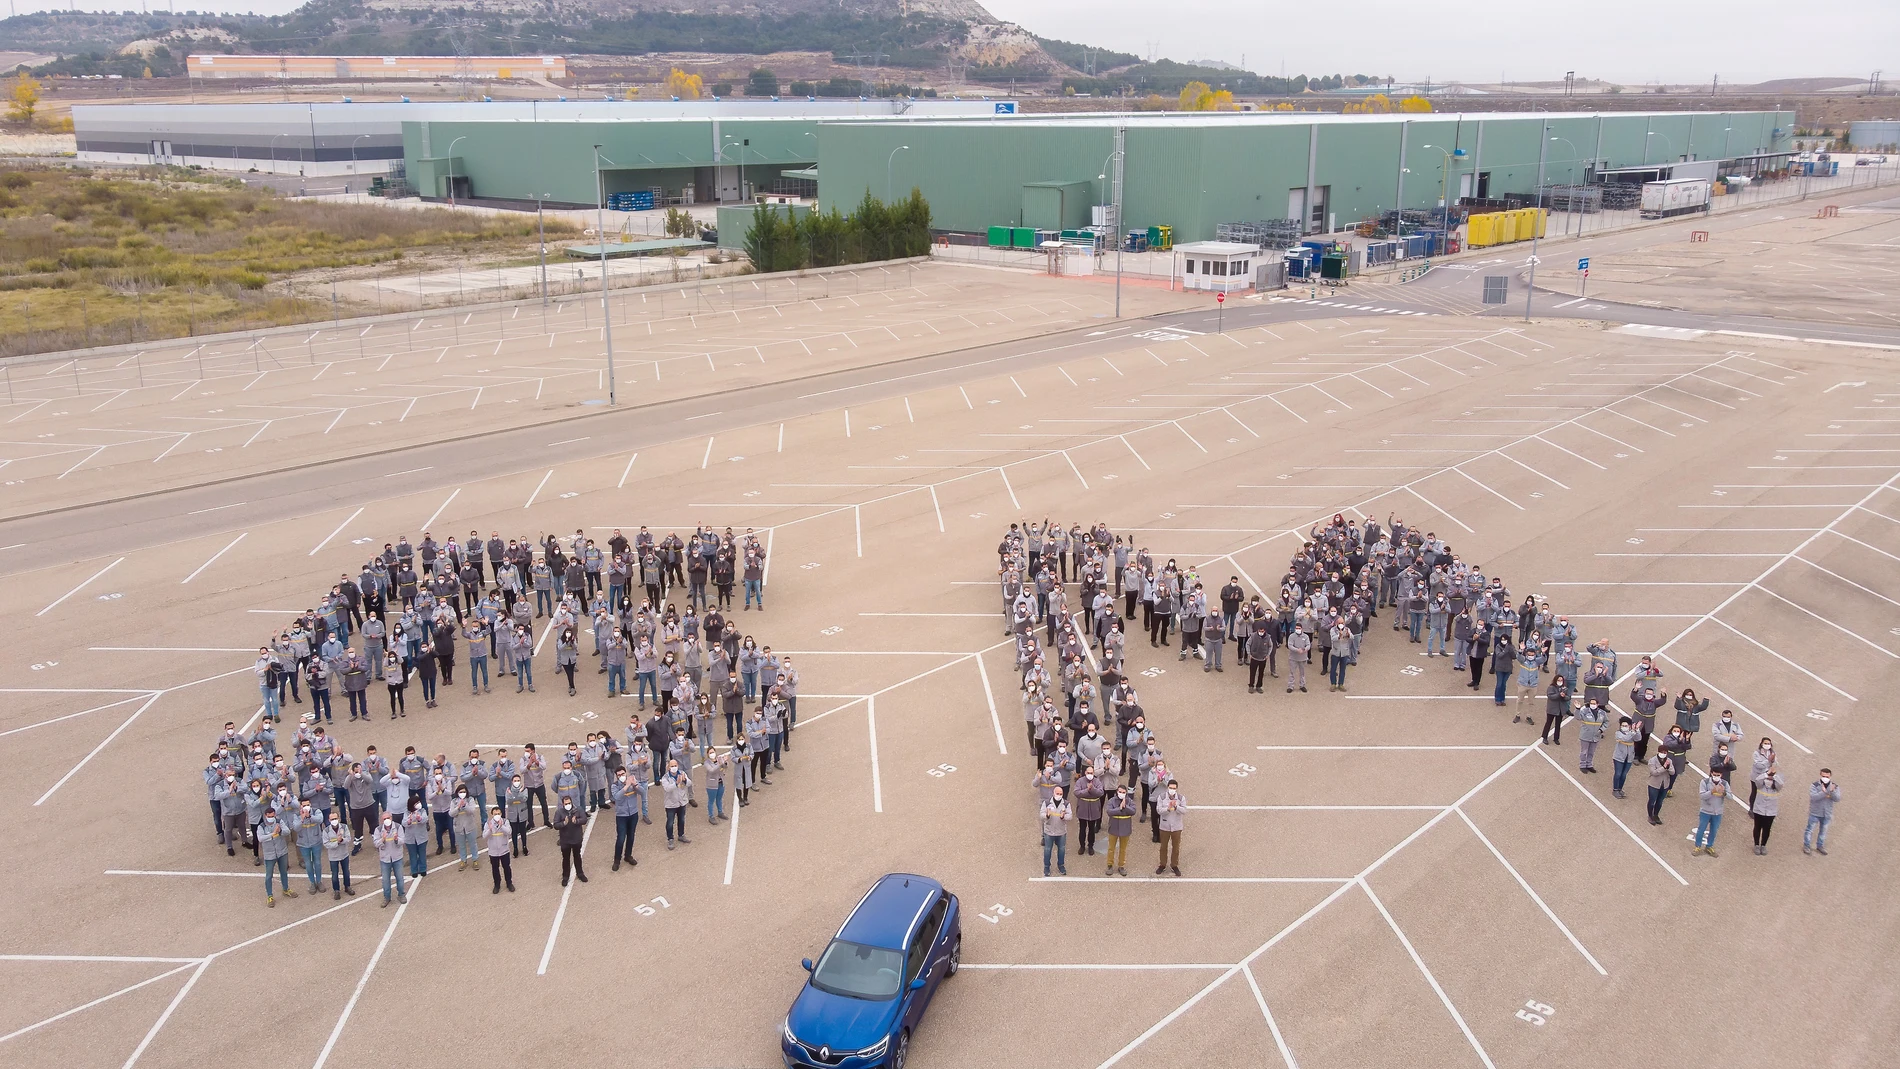 La Factoría de Palencia ha fabricado su Mégane 5 millones desde que comenzara su producción en 1995